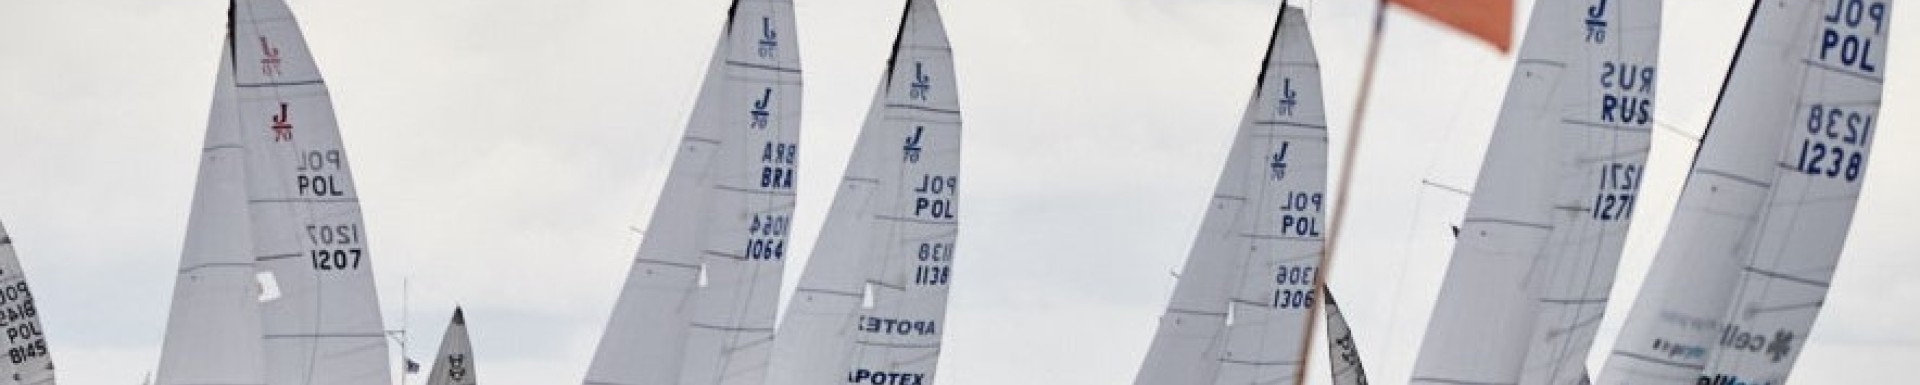 Mistrzostwa Miasta Gdańska - Mistrzostwa Polskiej Floty J/70